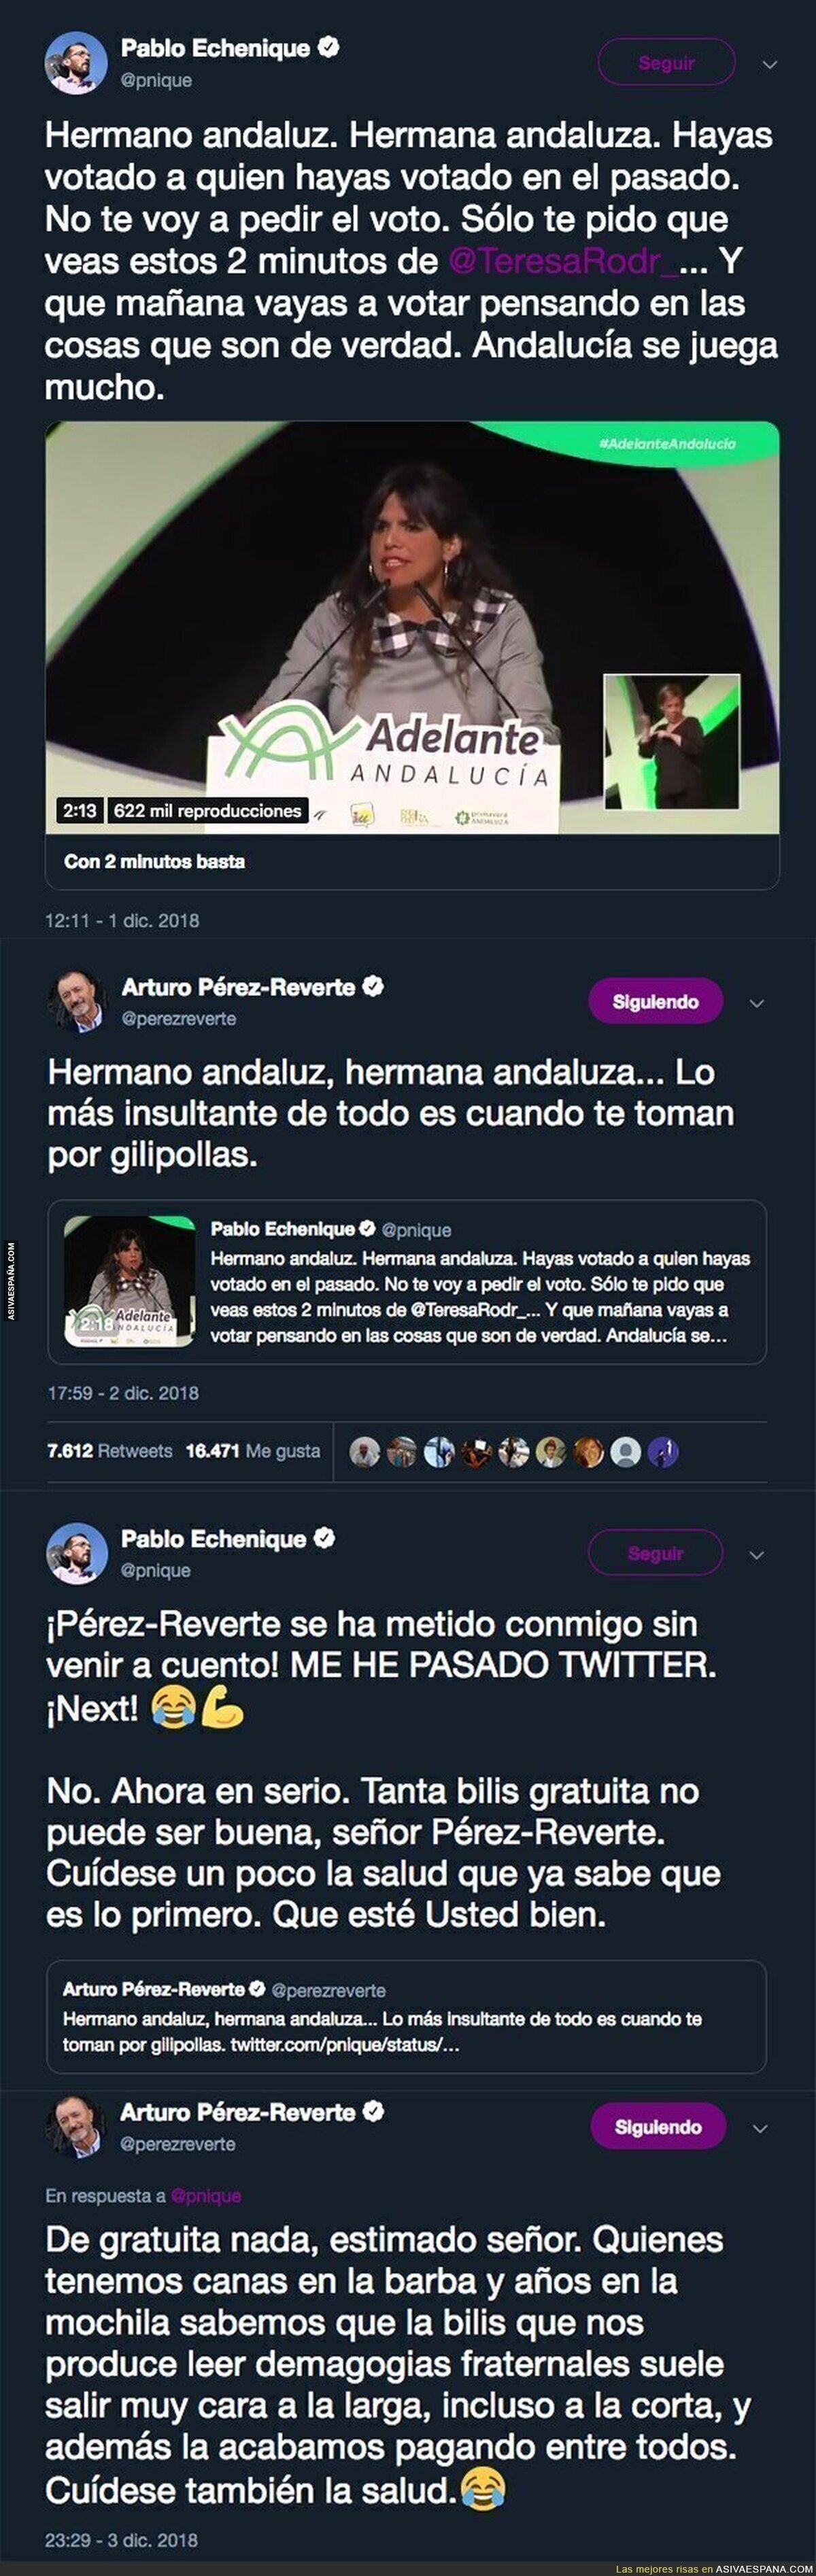 Arturo Pérez-Reverte se enfrenta a Pablo Echenique en Twitter y le deja totalmente KO en la lona